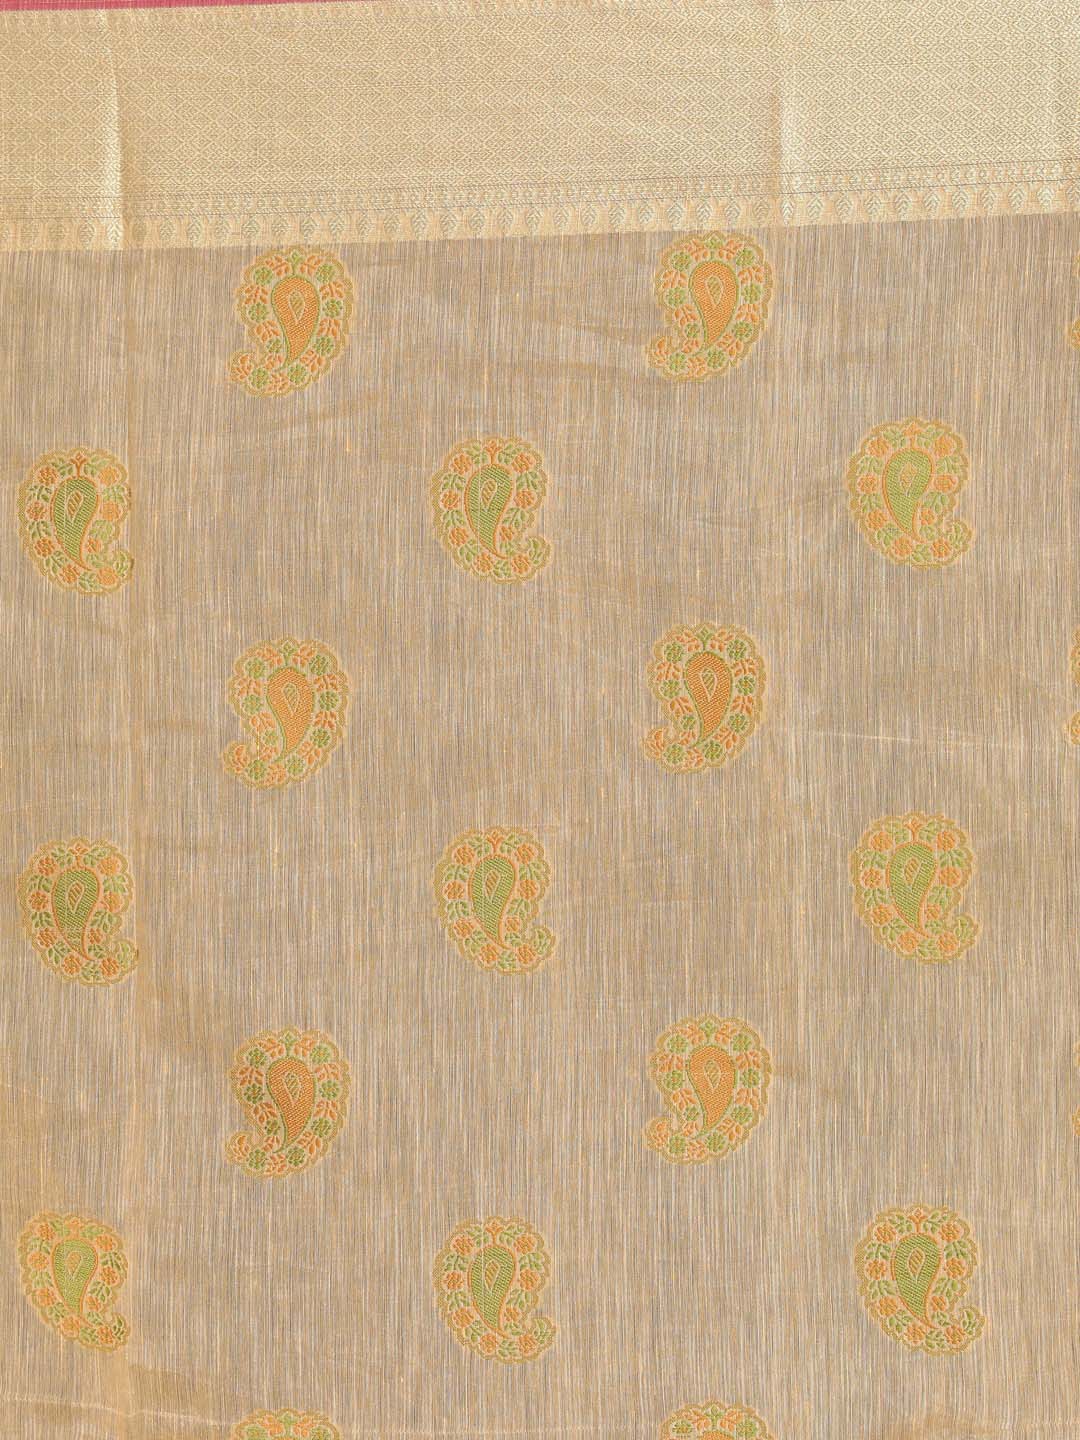 Indethnic Banarasi Gold Woven Design Work Wear Saree - Saree Detail View